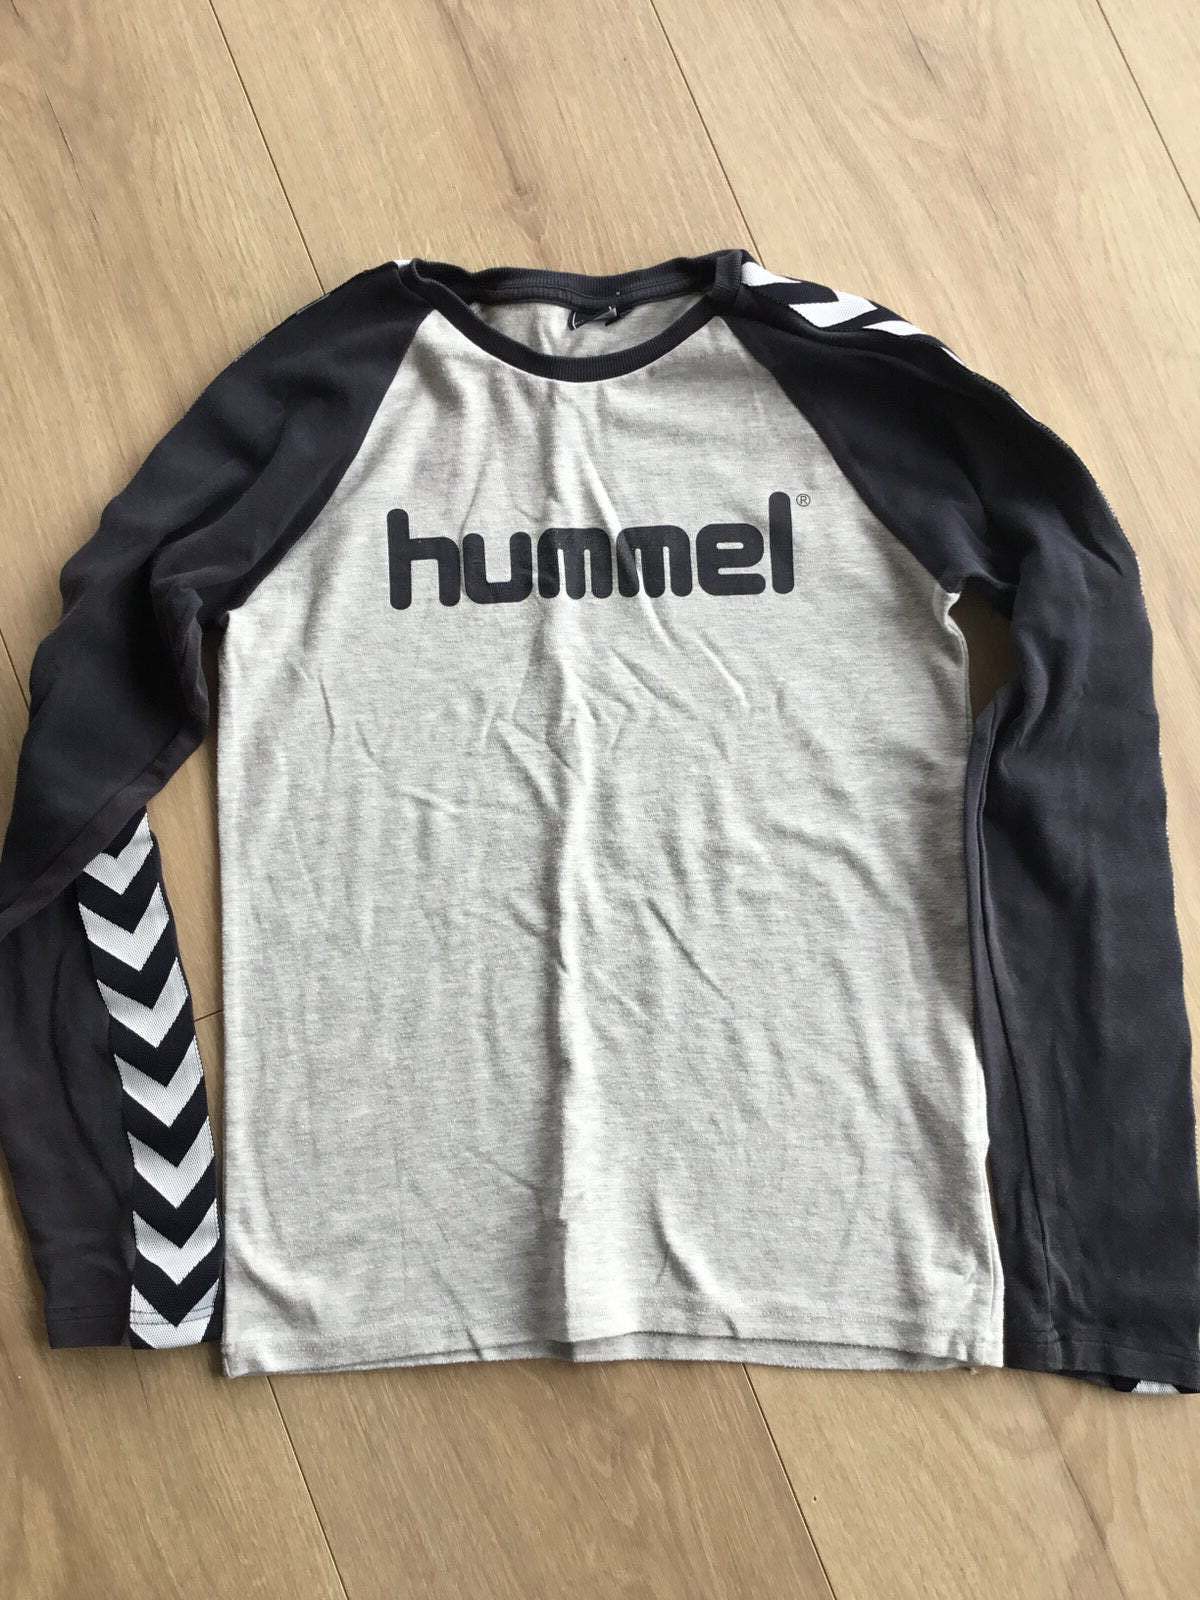 T-shirt, Langærmet tshirt, Hummel – dba.dk – Køb Salg af Nyt og